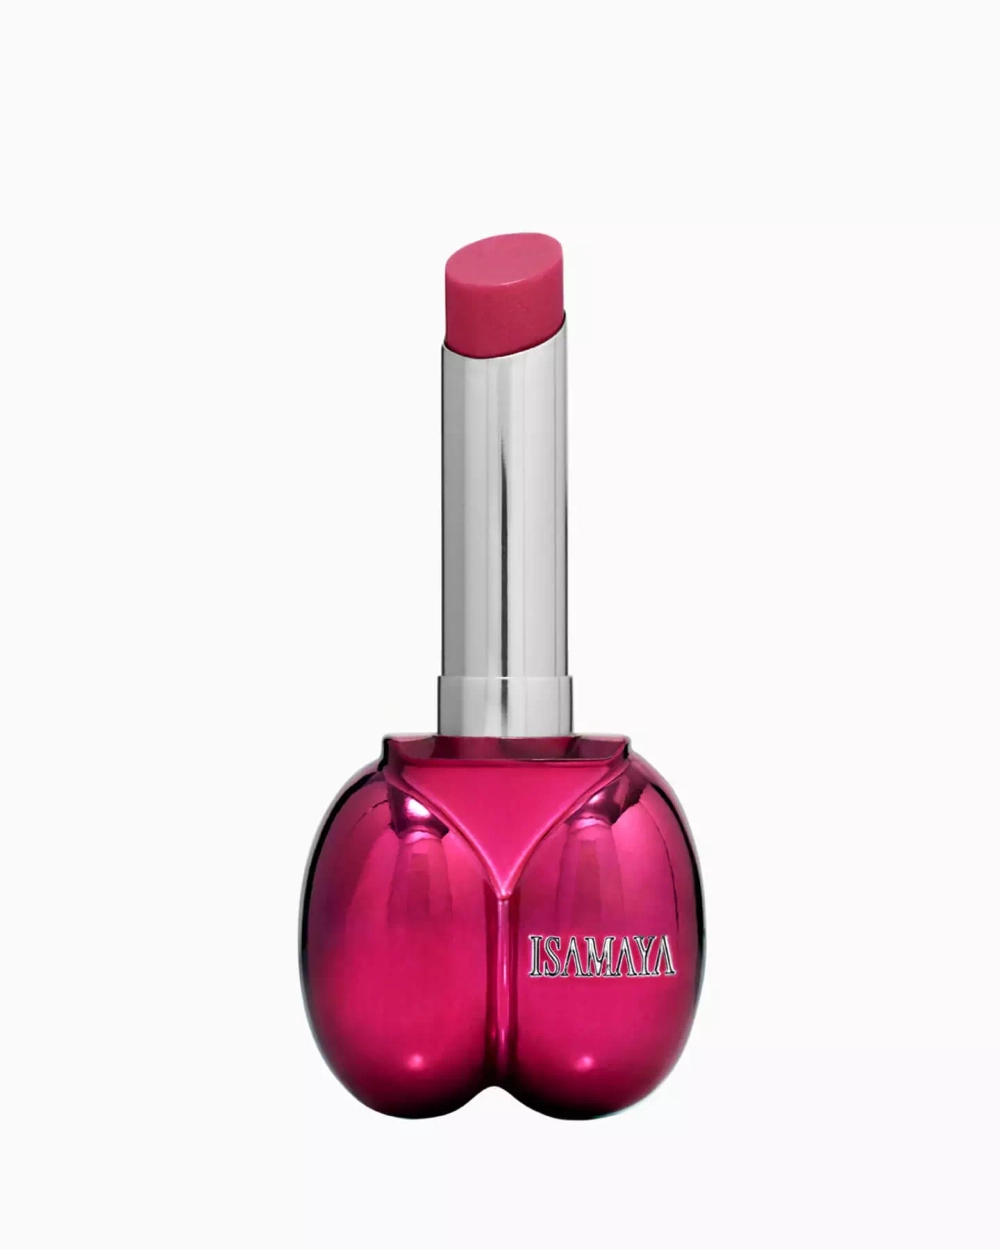 Isamaya Lips Sheer Lipstick Balm - Flamingo